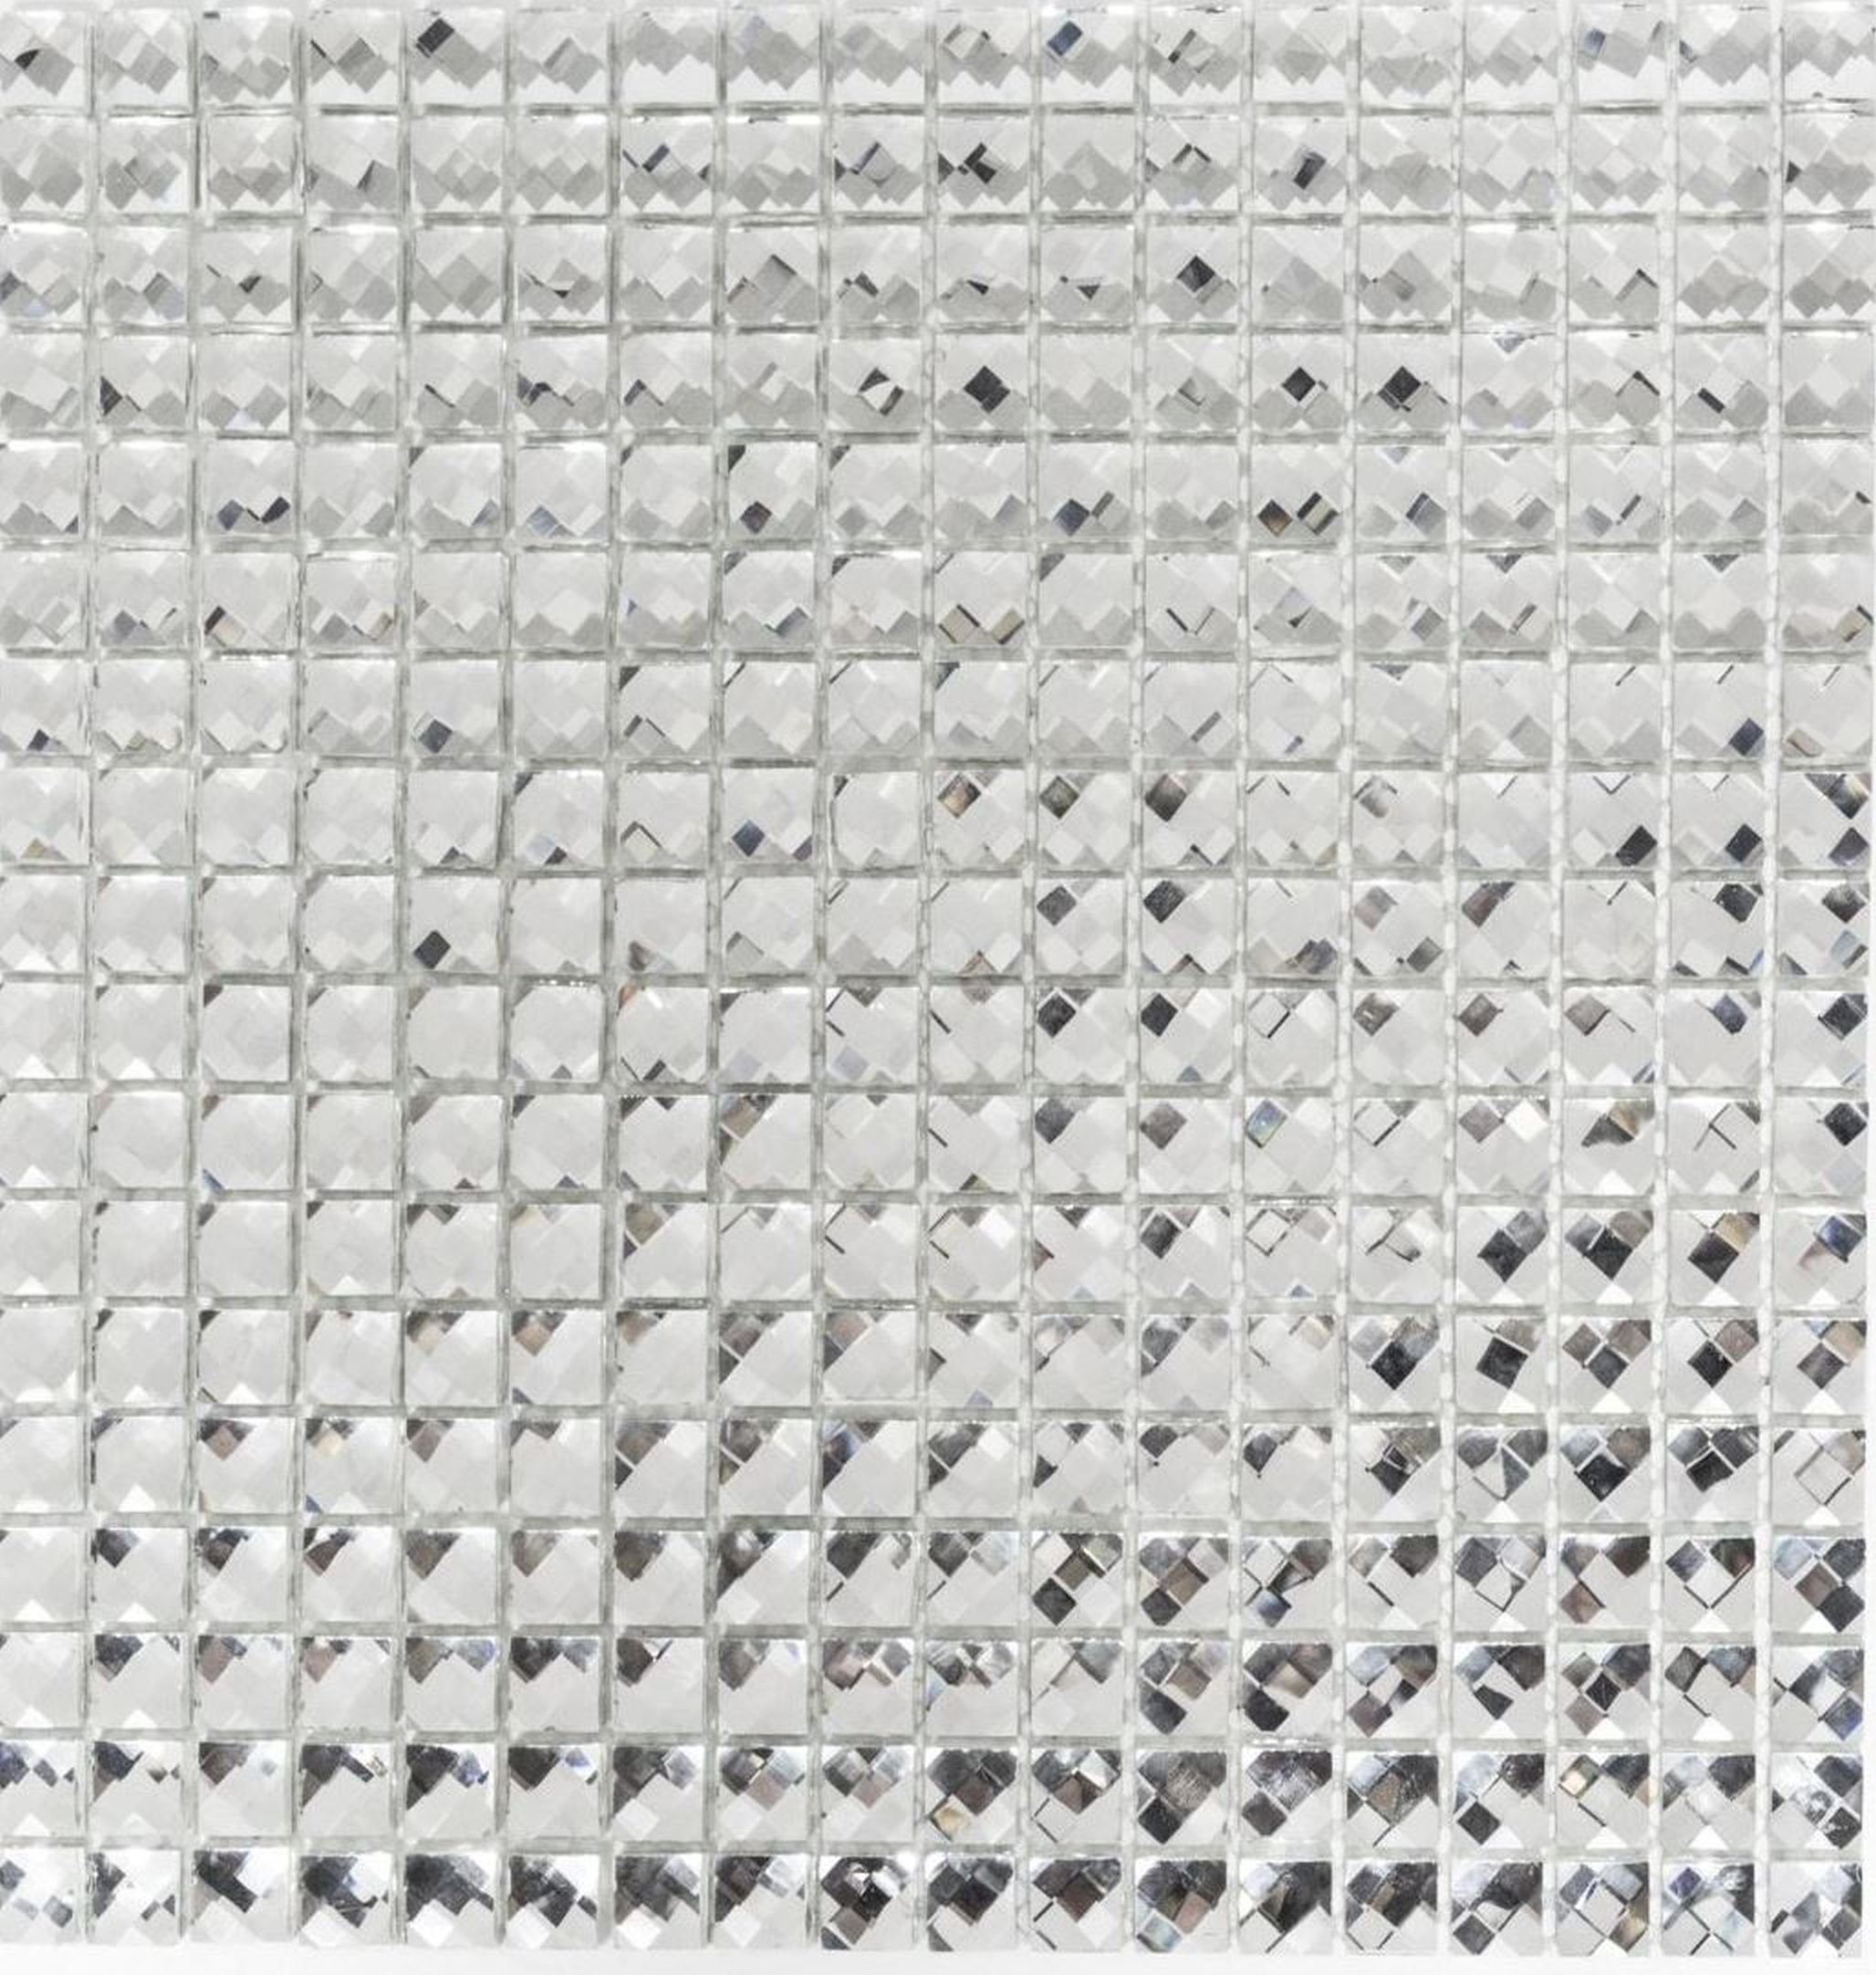 Beliebte Neuware Mosani Mosaikfliesen Glasmosaik silber Fliesenspiegel Küche Optik Diamant Mosaikfliese